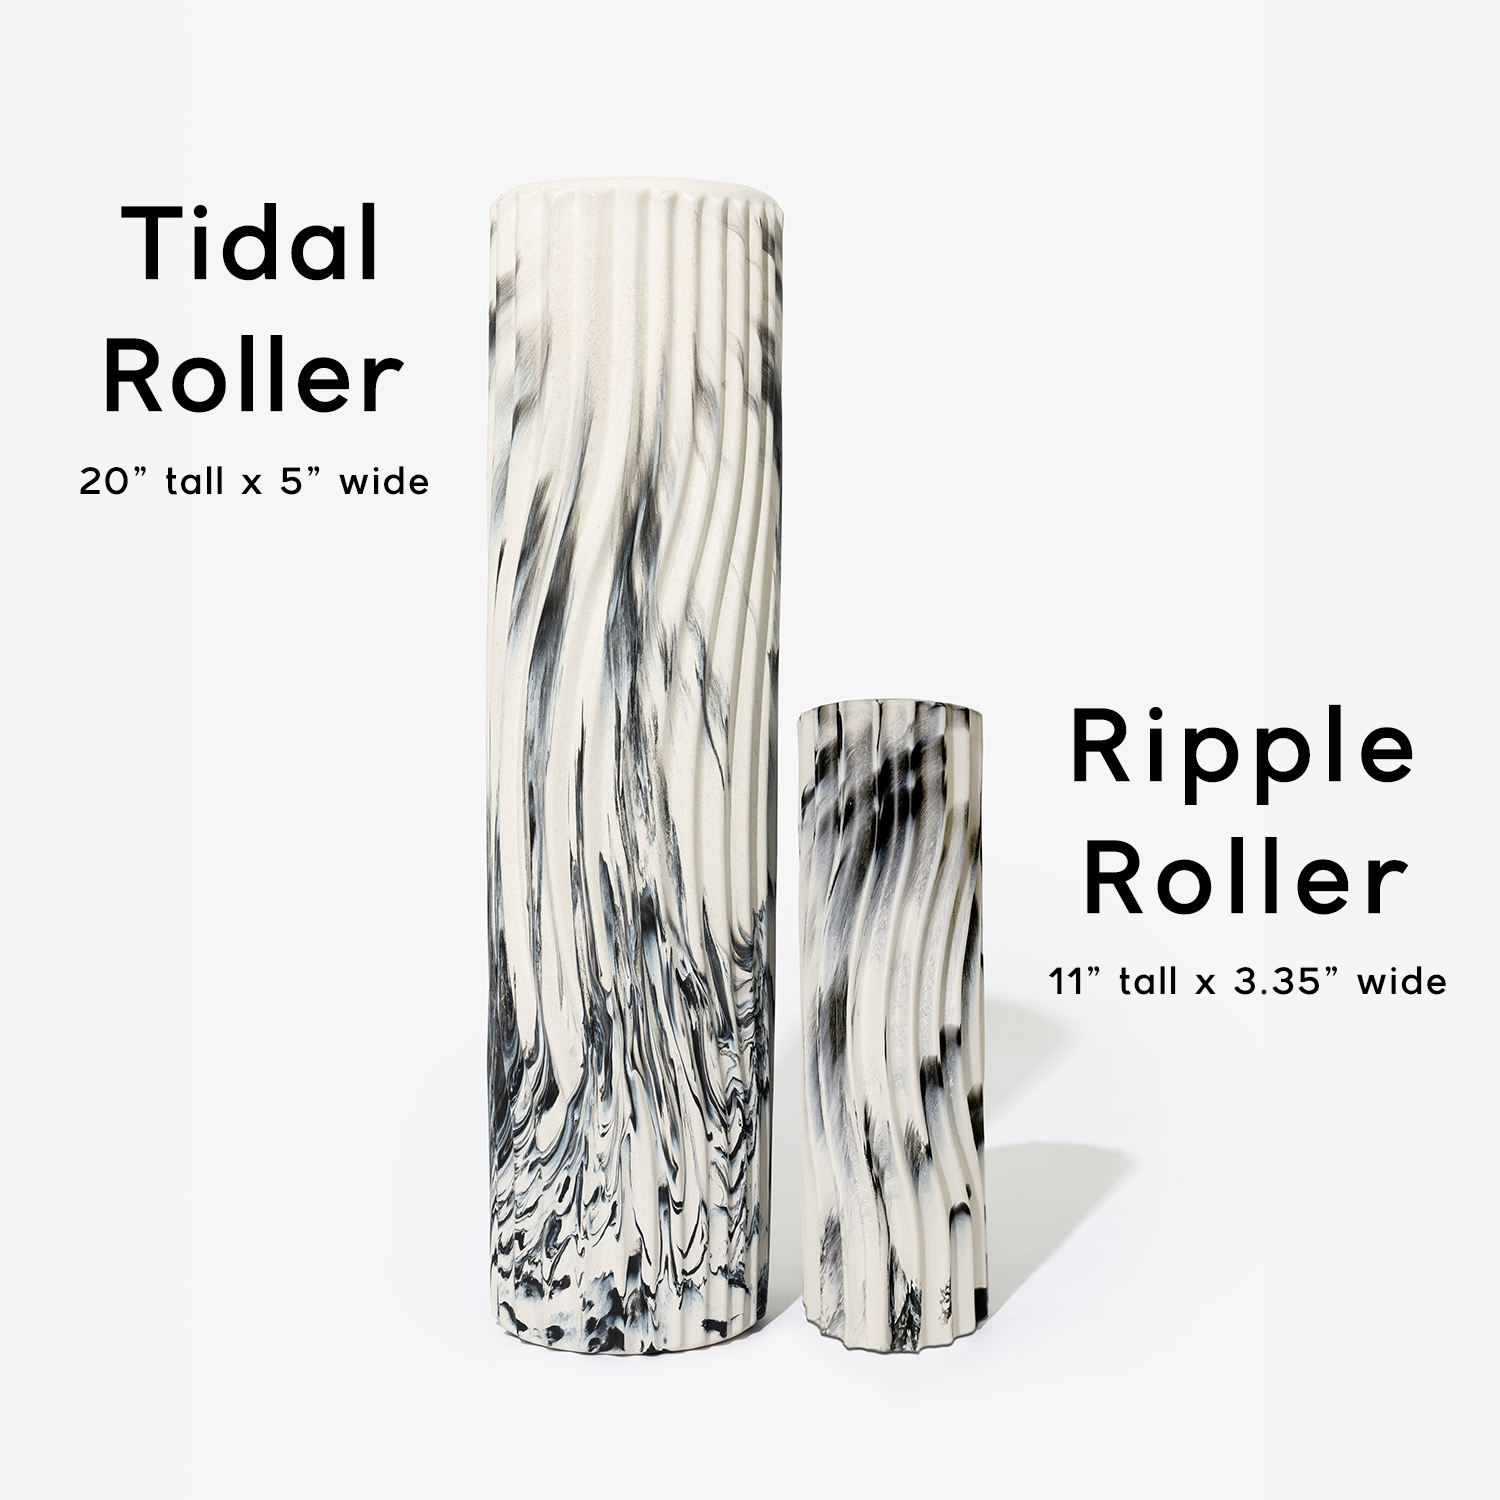 The Tidal Roller (Full Size)